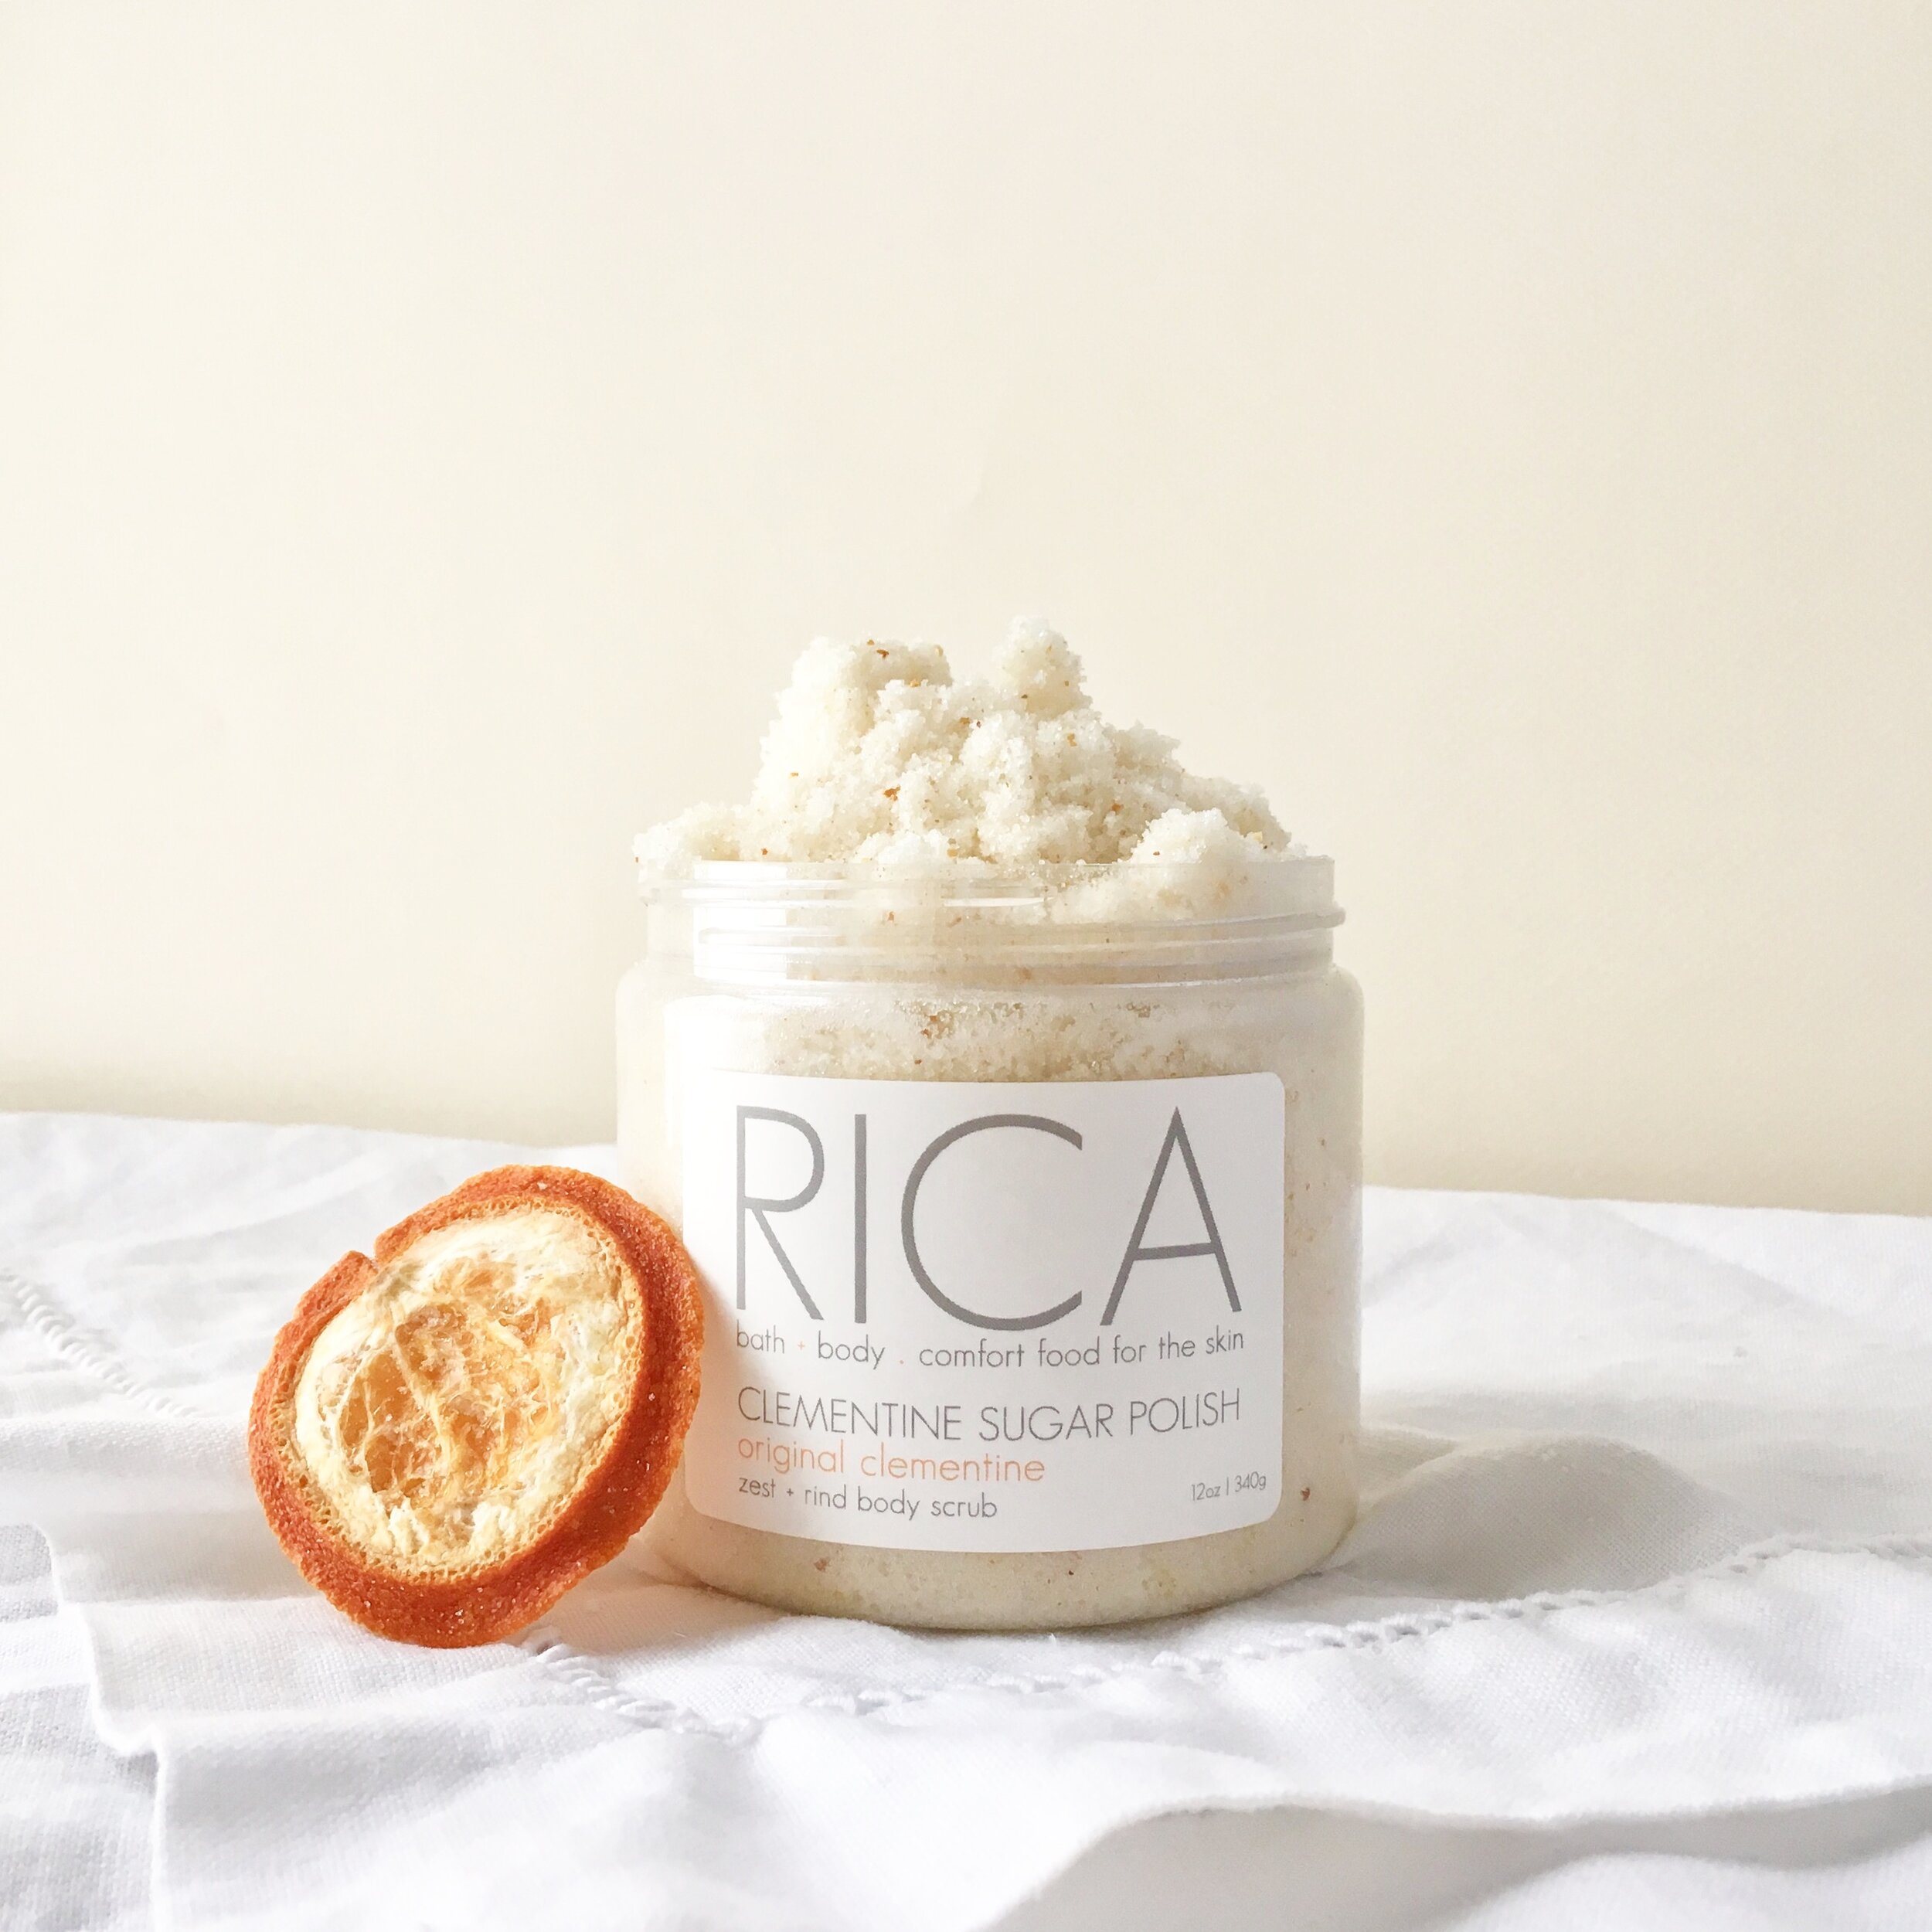 RICA bath + body Clementine Sugar Polish Sans Lid with Slice.JPG